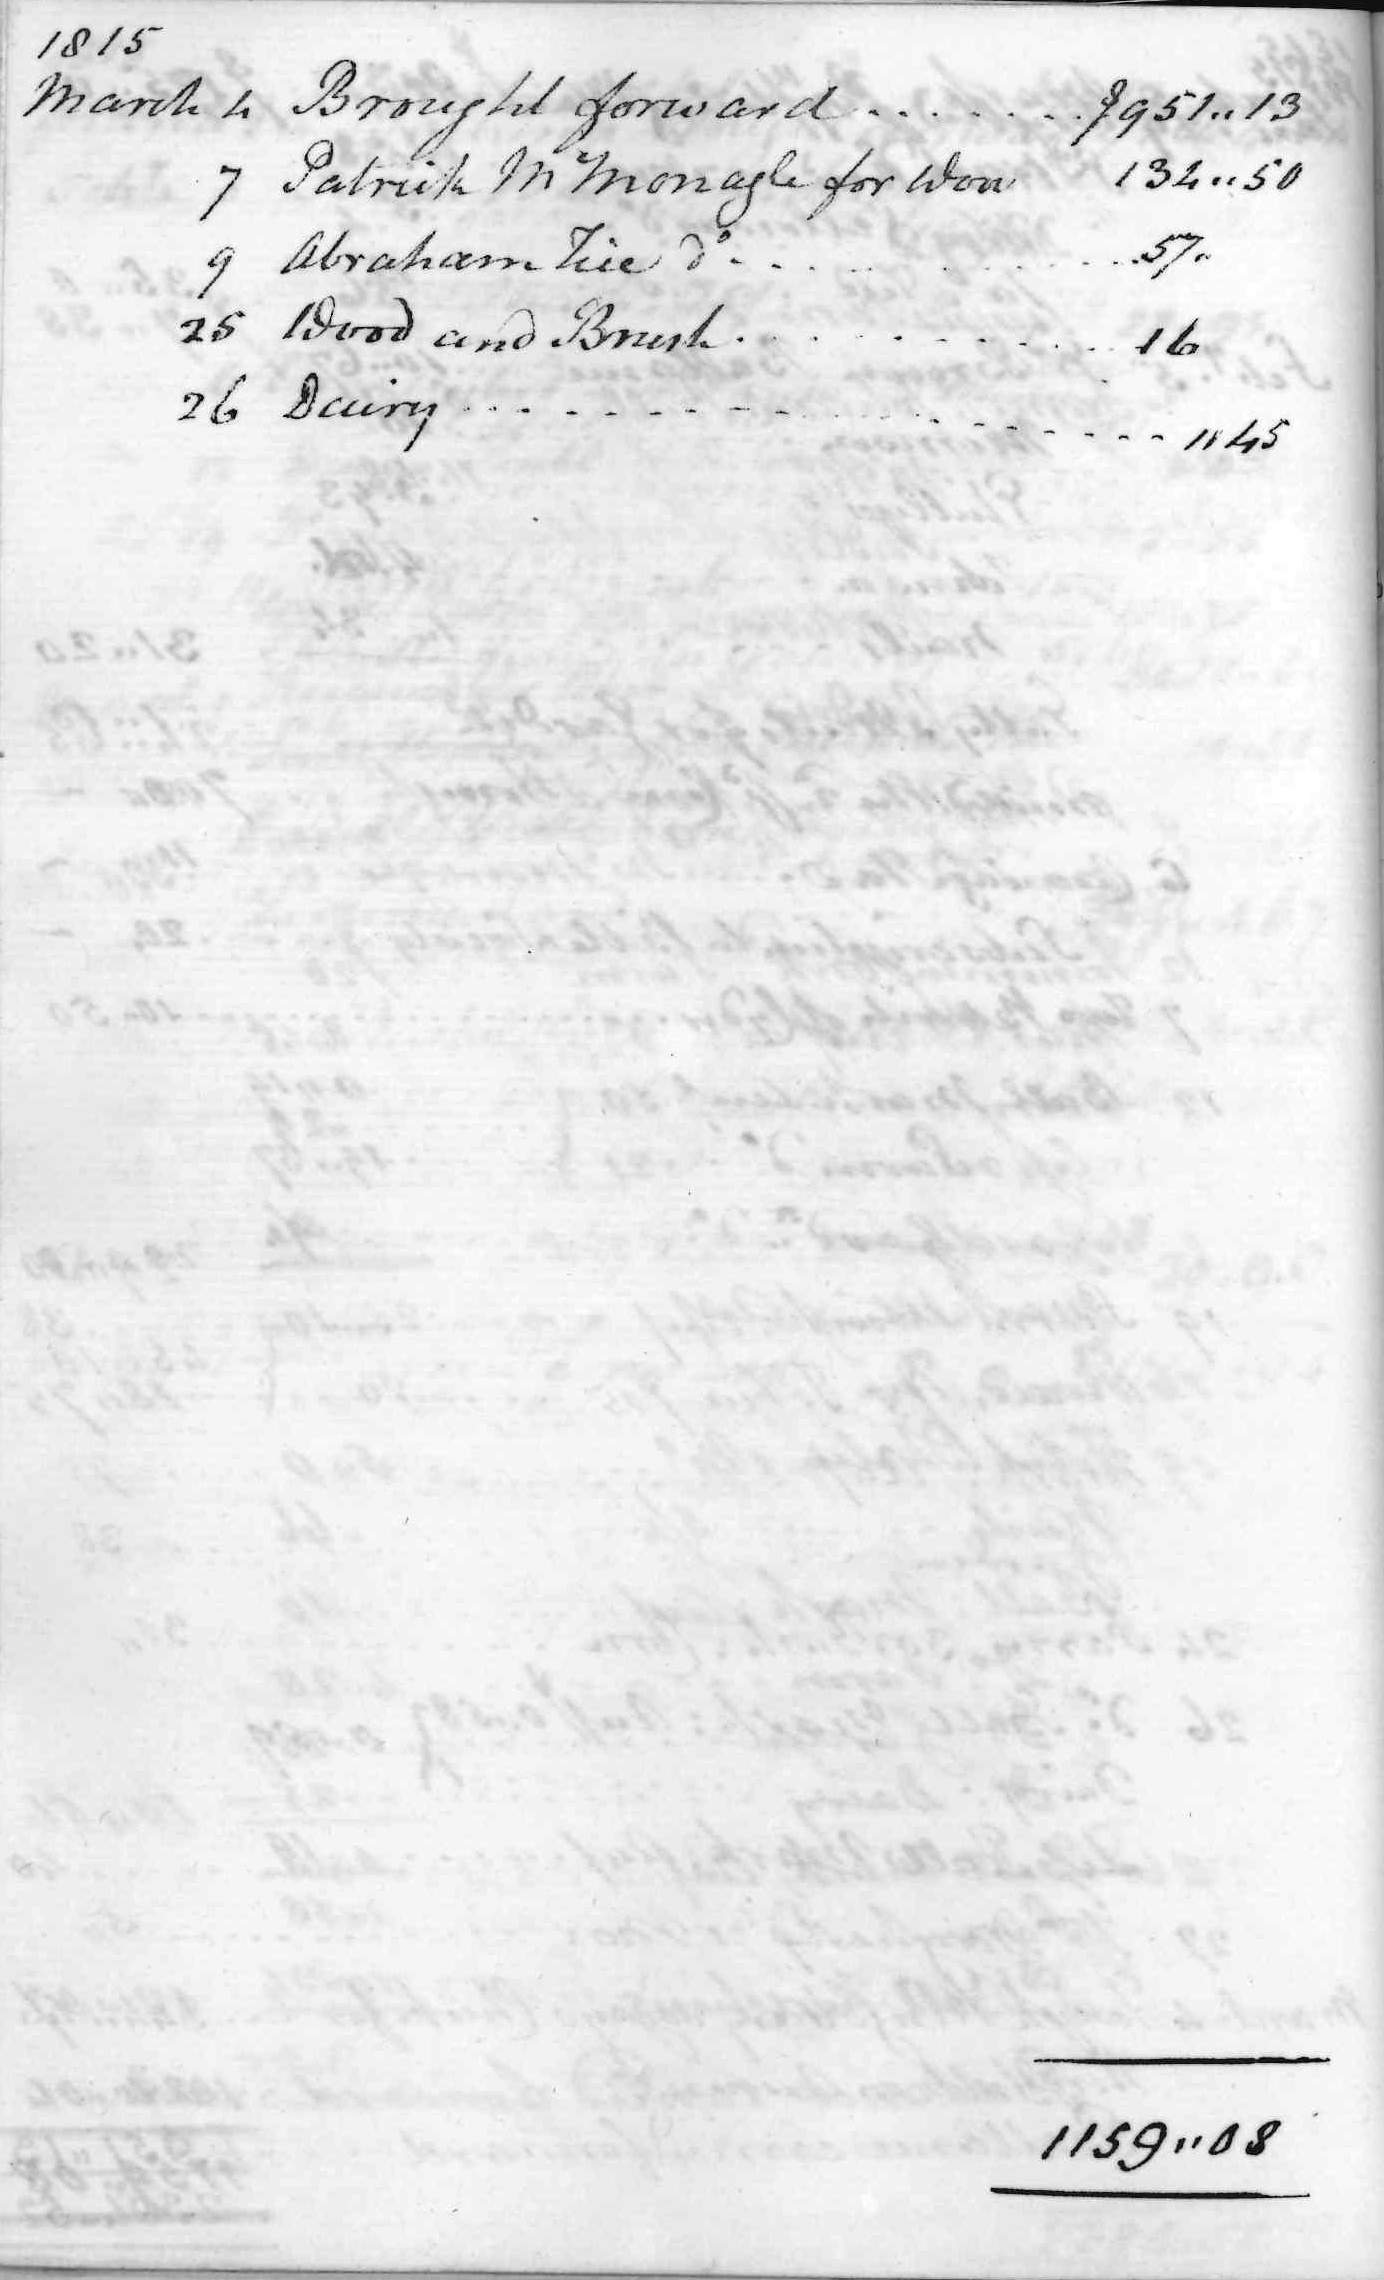 Gouverneur Morris Cash Book, folio 39, left side